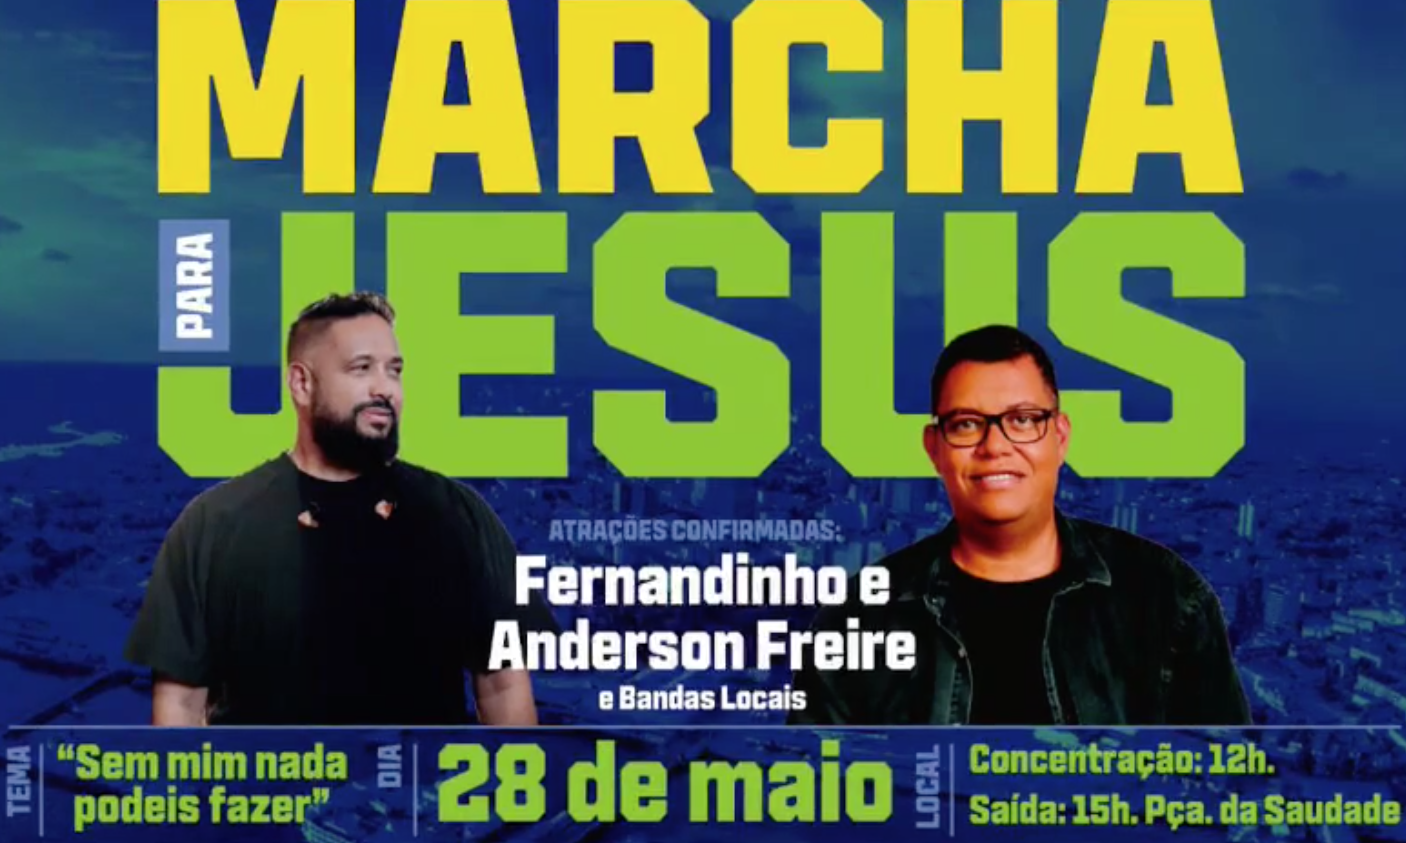 Marcha para Jesus 2022' acontece em maio em Manaus